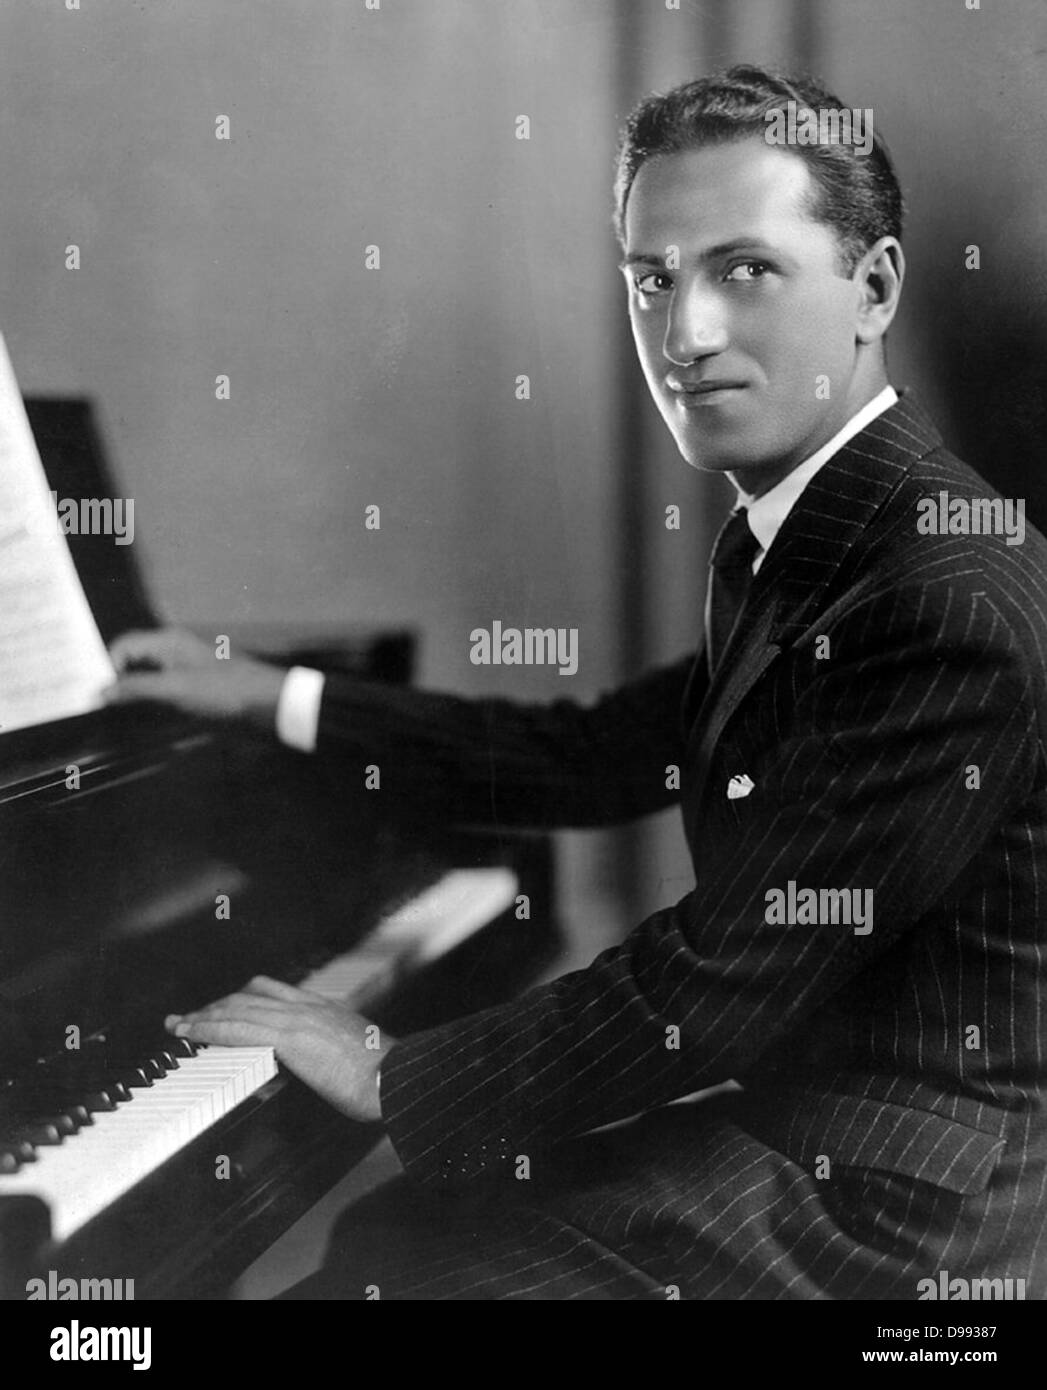 George Gershwin (1898 - 1937) American compositore e pianista. Gershwin le composizioni si estendesse sia classica e popolare di generi. Egli scrisse la maggior parte della sua voce e opere teatrali, compresi più di una dozzina di spettacoli di Broadway, in collaborazione con il suo fratello più anziano Ira Gershwin Foto Stock